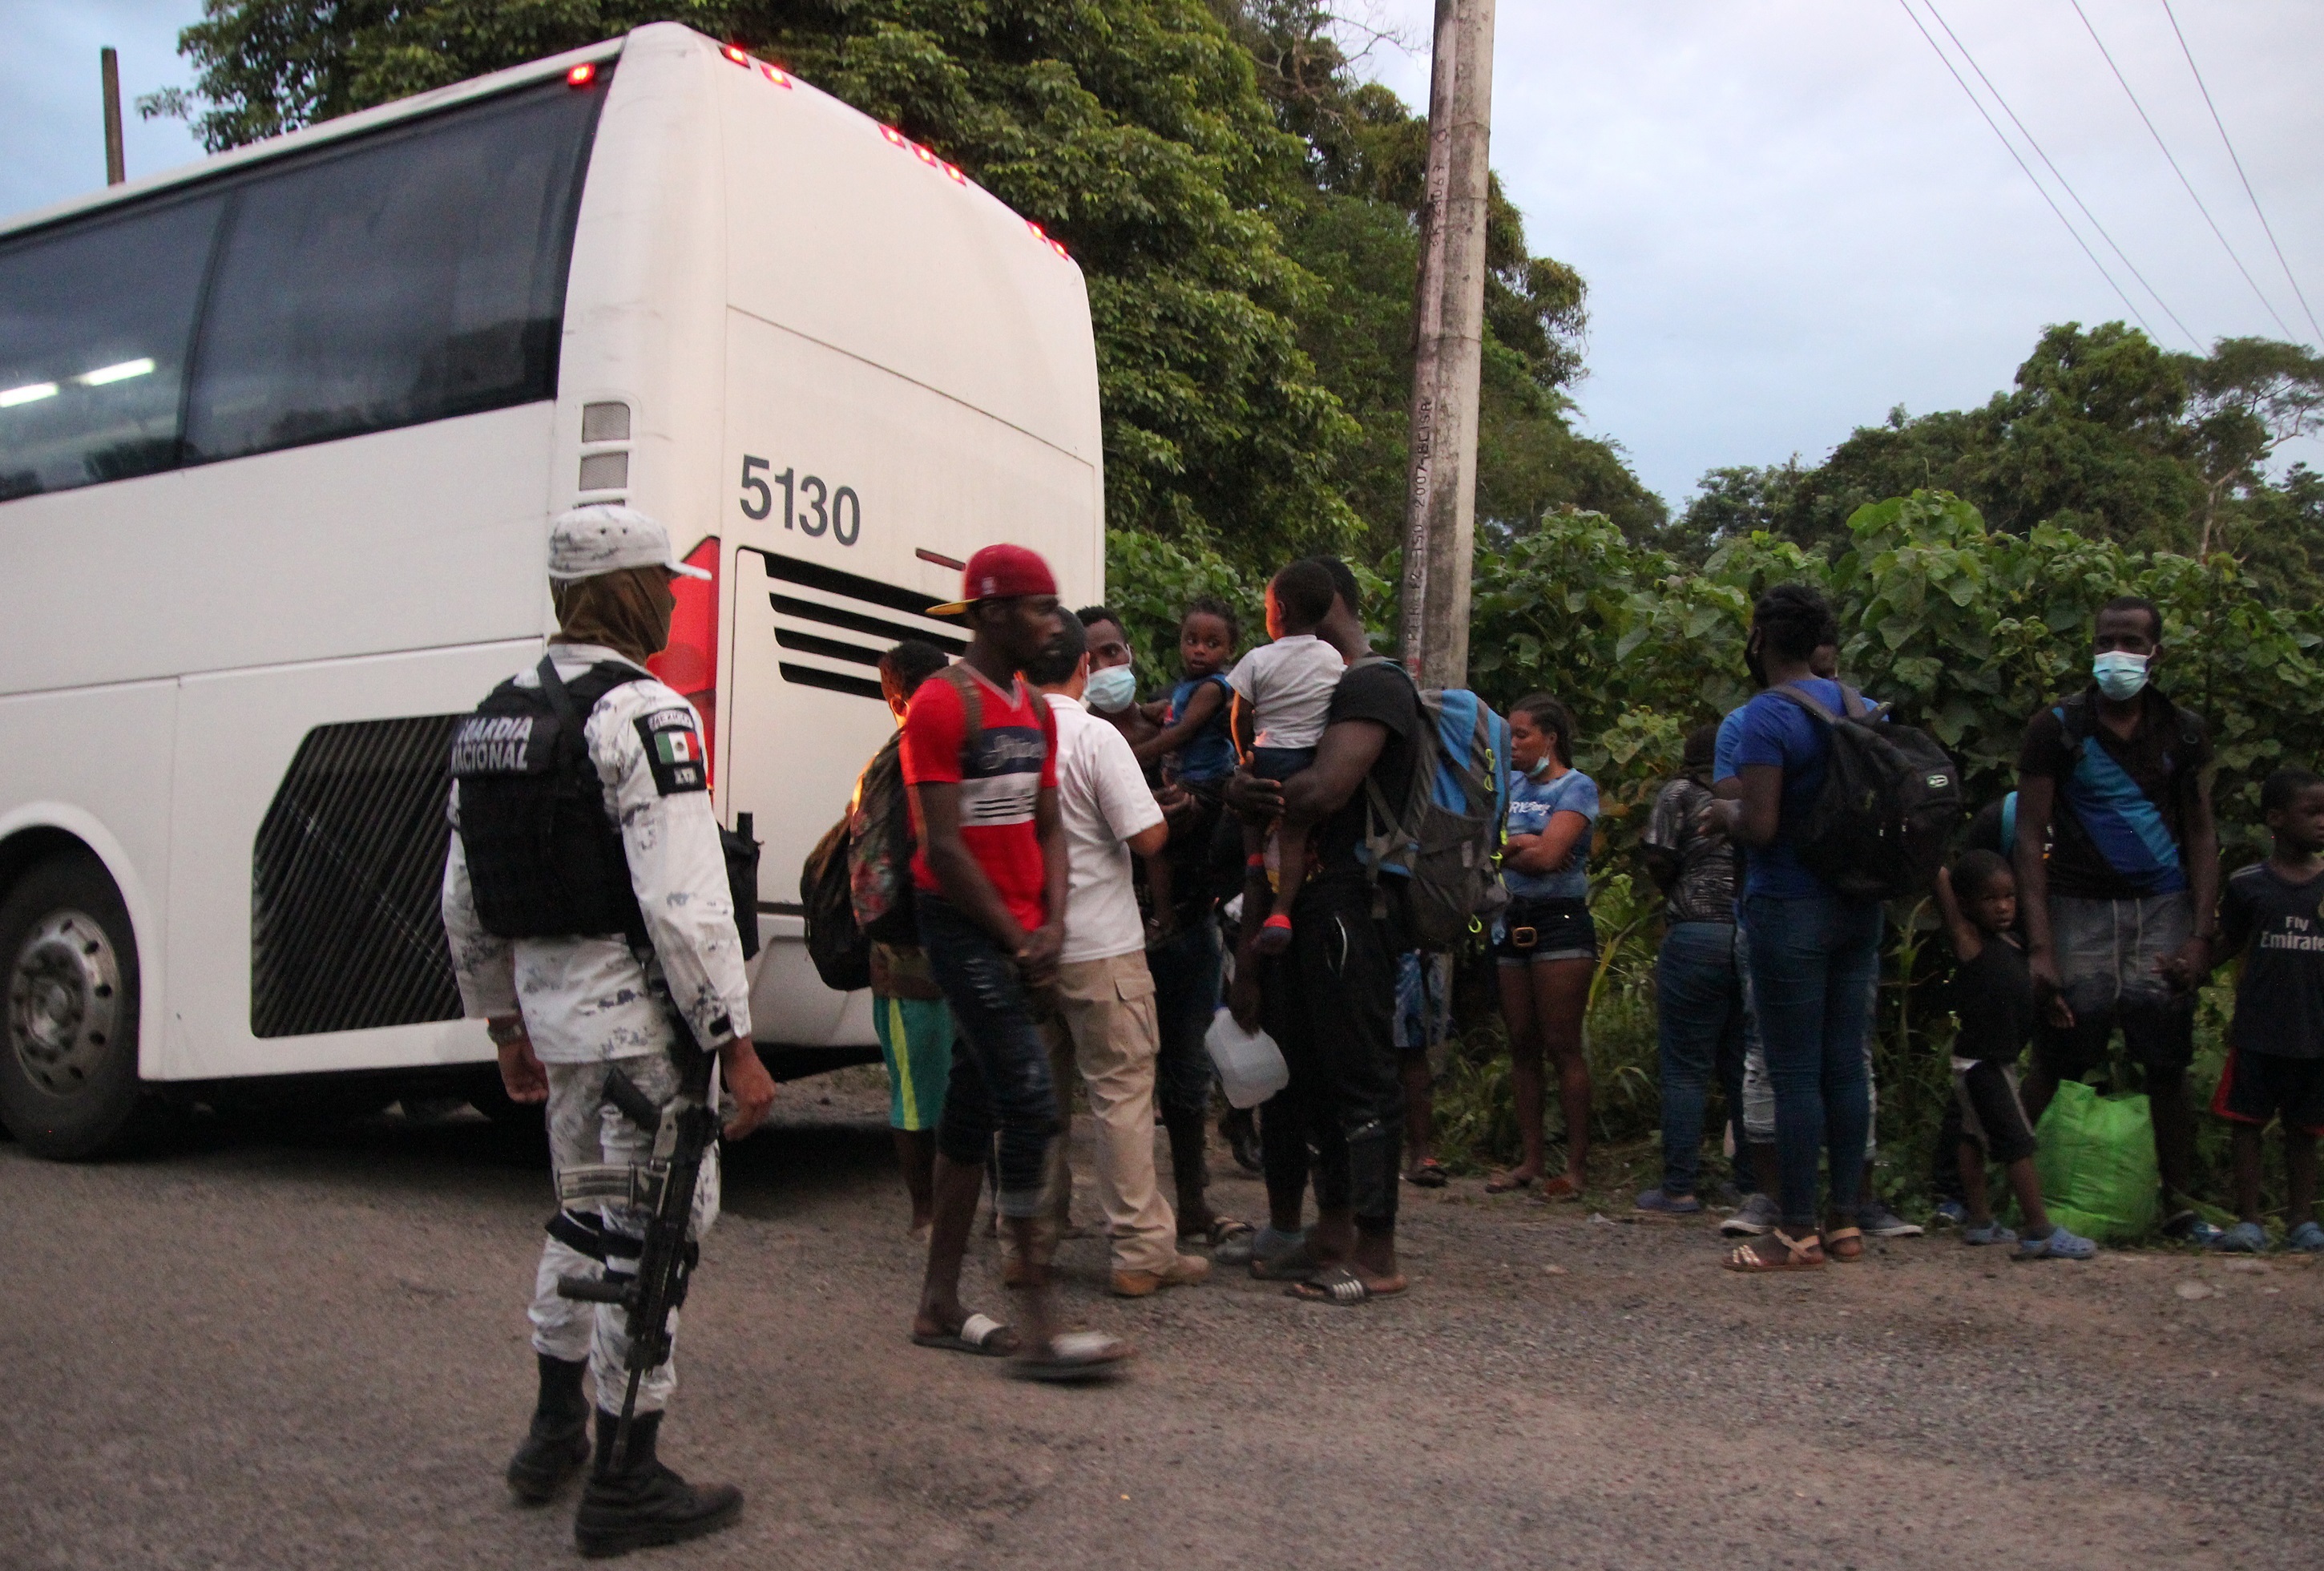 Hallaron 86 migrantes en un camión y arrestaron a tres traficantes en México